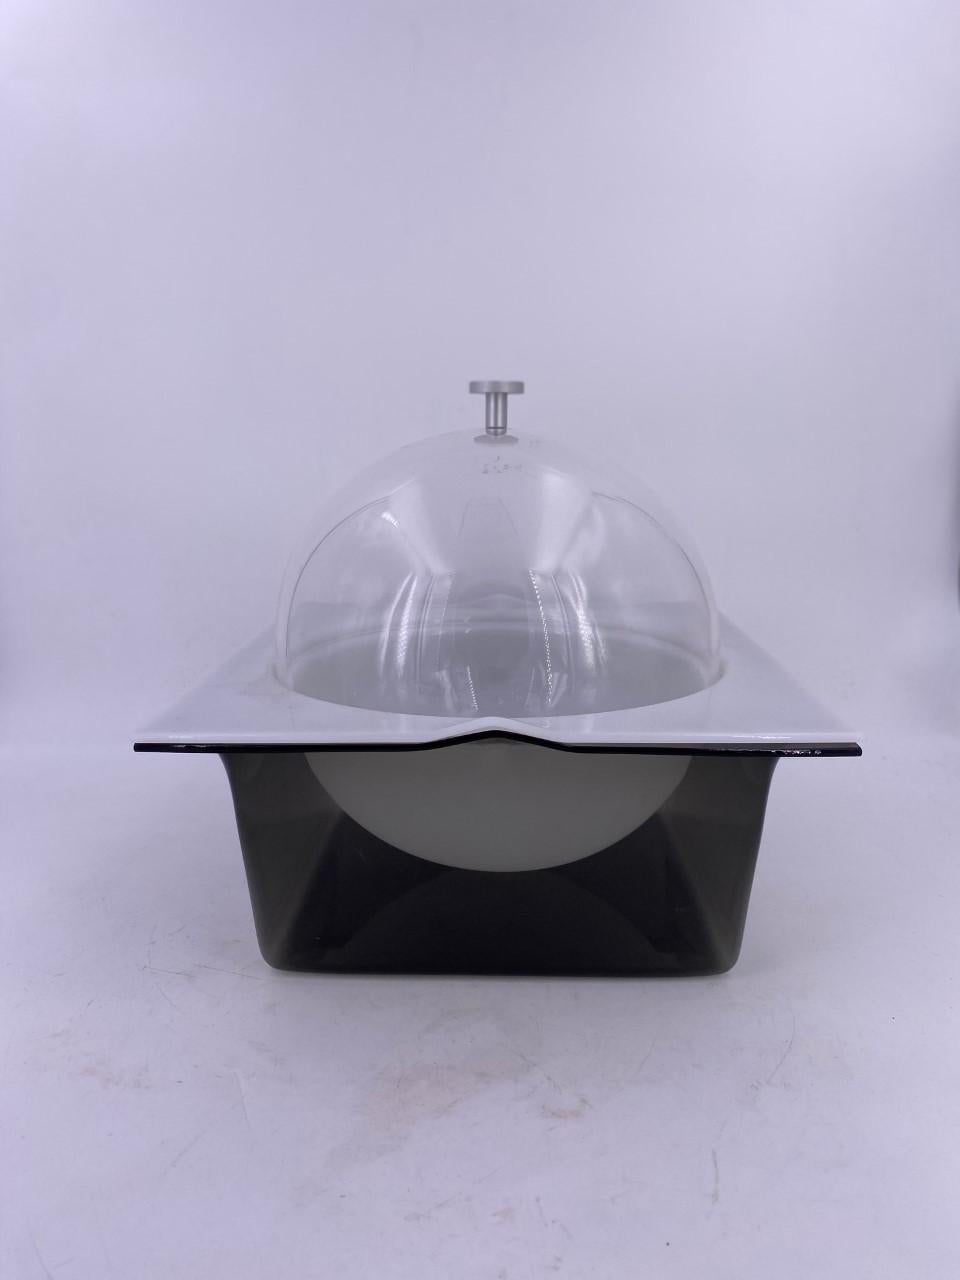 Schöner und einzigartiger Space Age Dome-Eiskübel mit herausnehmbarem Einsatz aus weißem Kunststoff zur einfachen Reinigung. Schlank und glamourös. Minimalistisch im Design und stilvoll in der Ausführung.